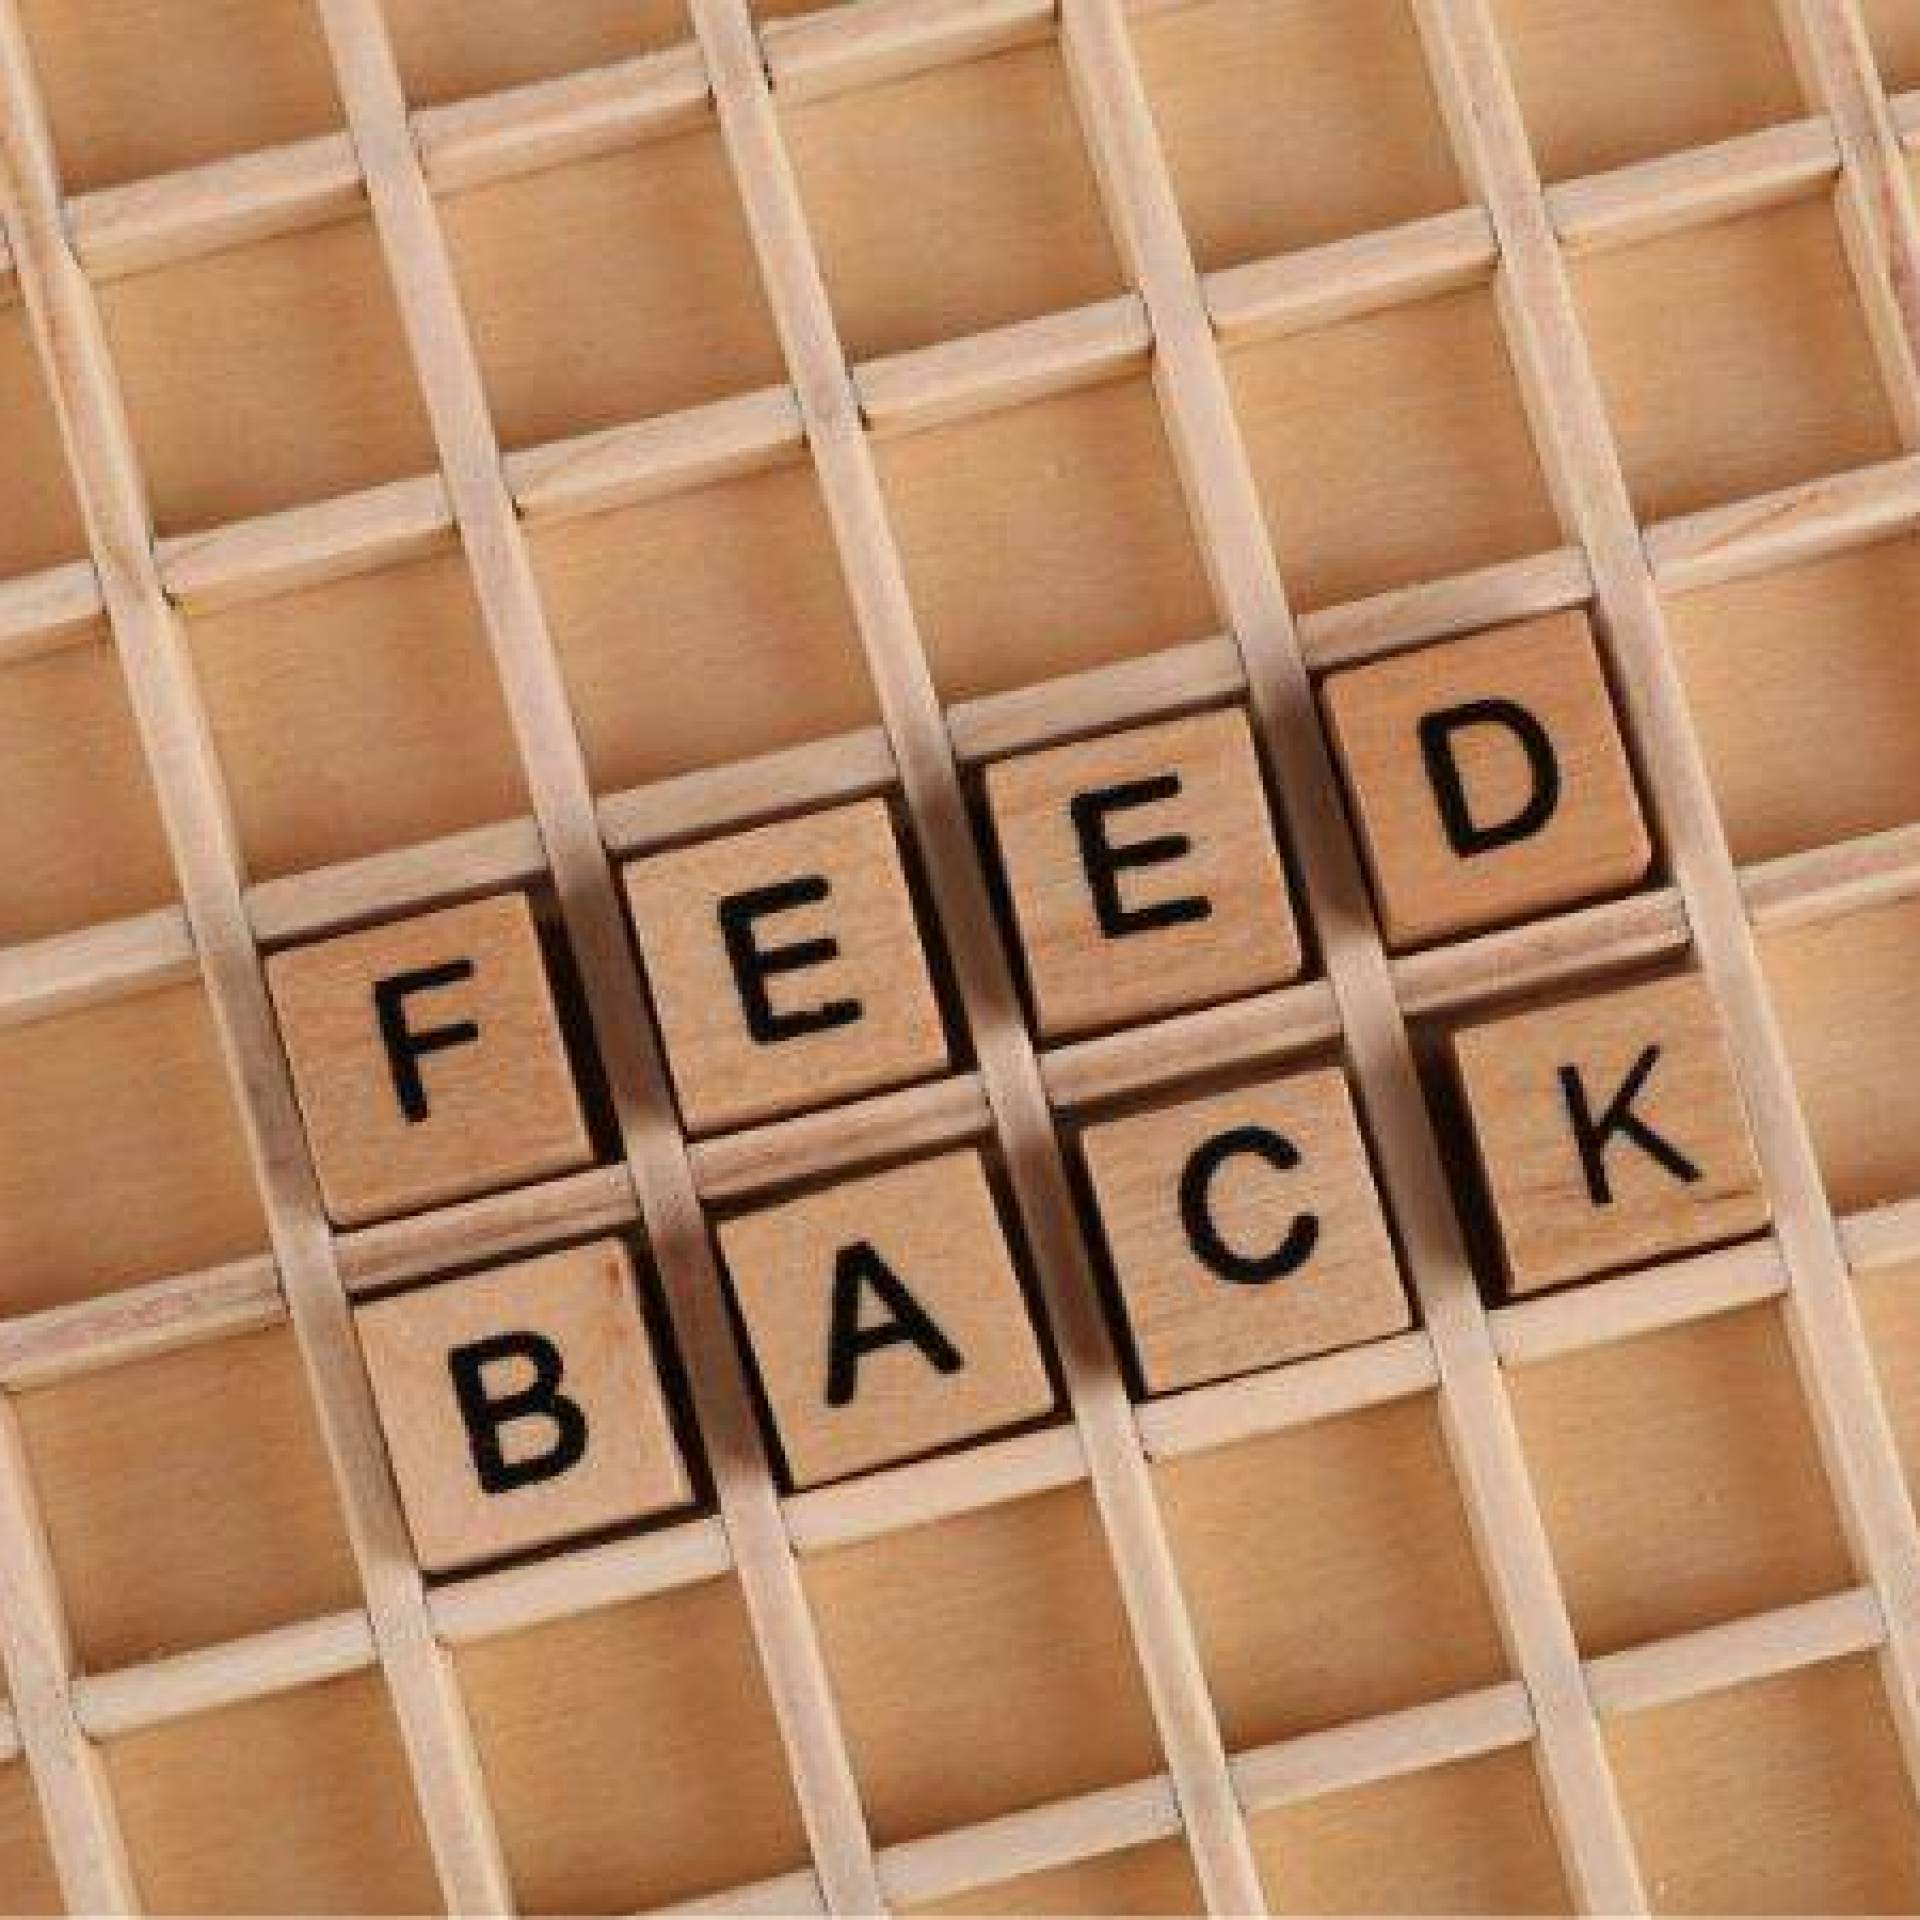 Udzielanie feedbacku - jak robić to skutecznie